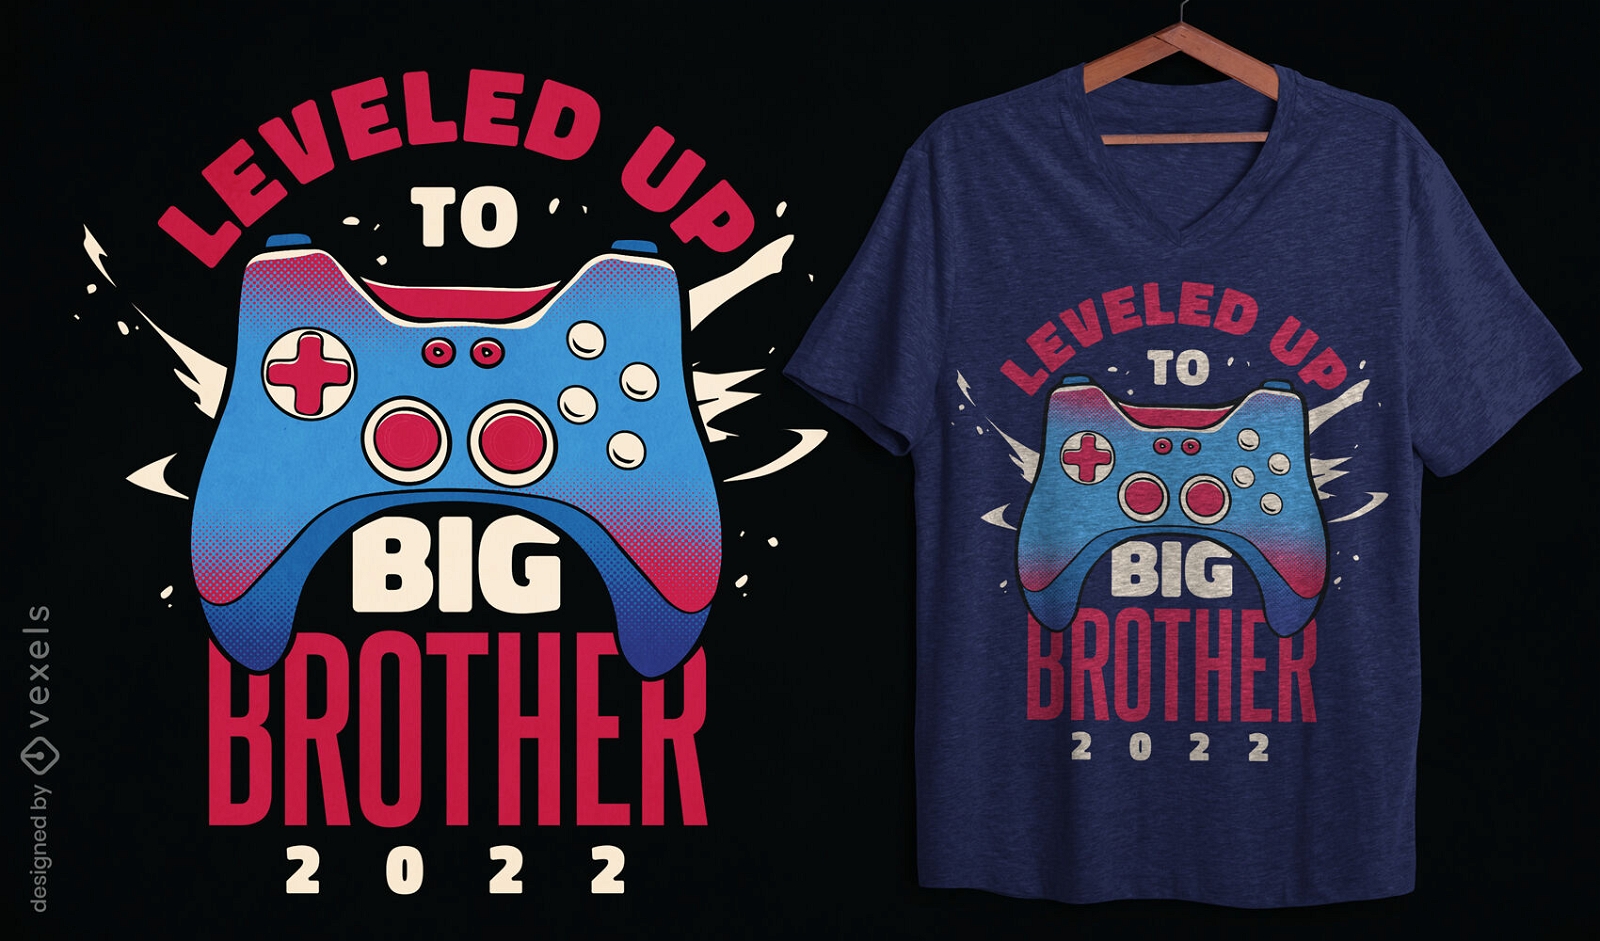 Big brother gaming joystick t-shirt design